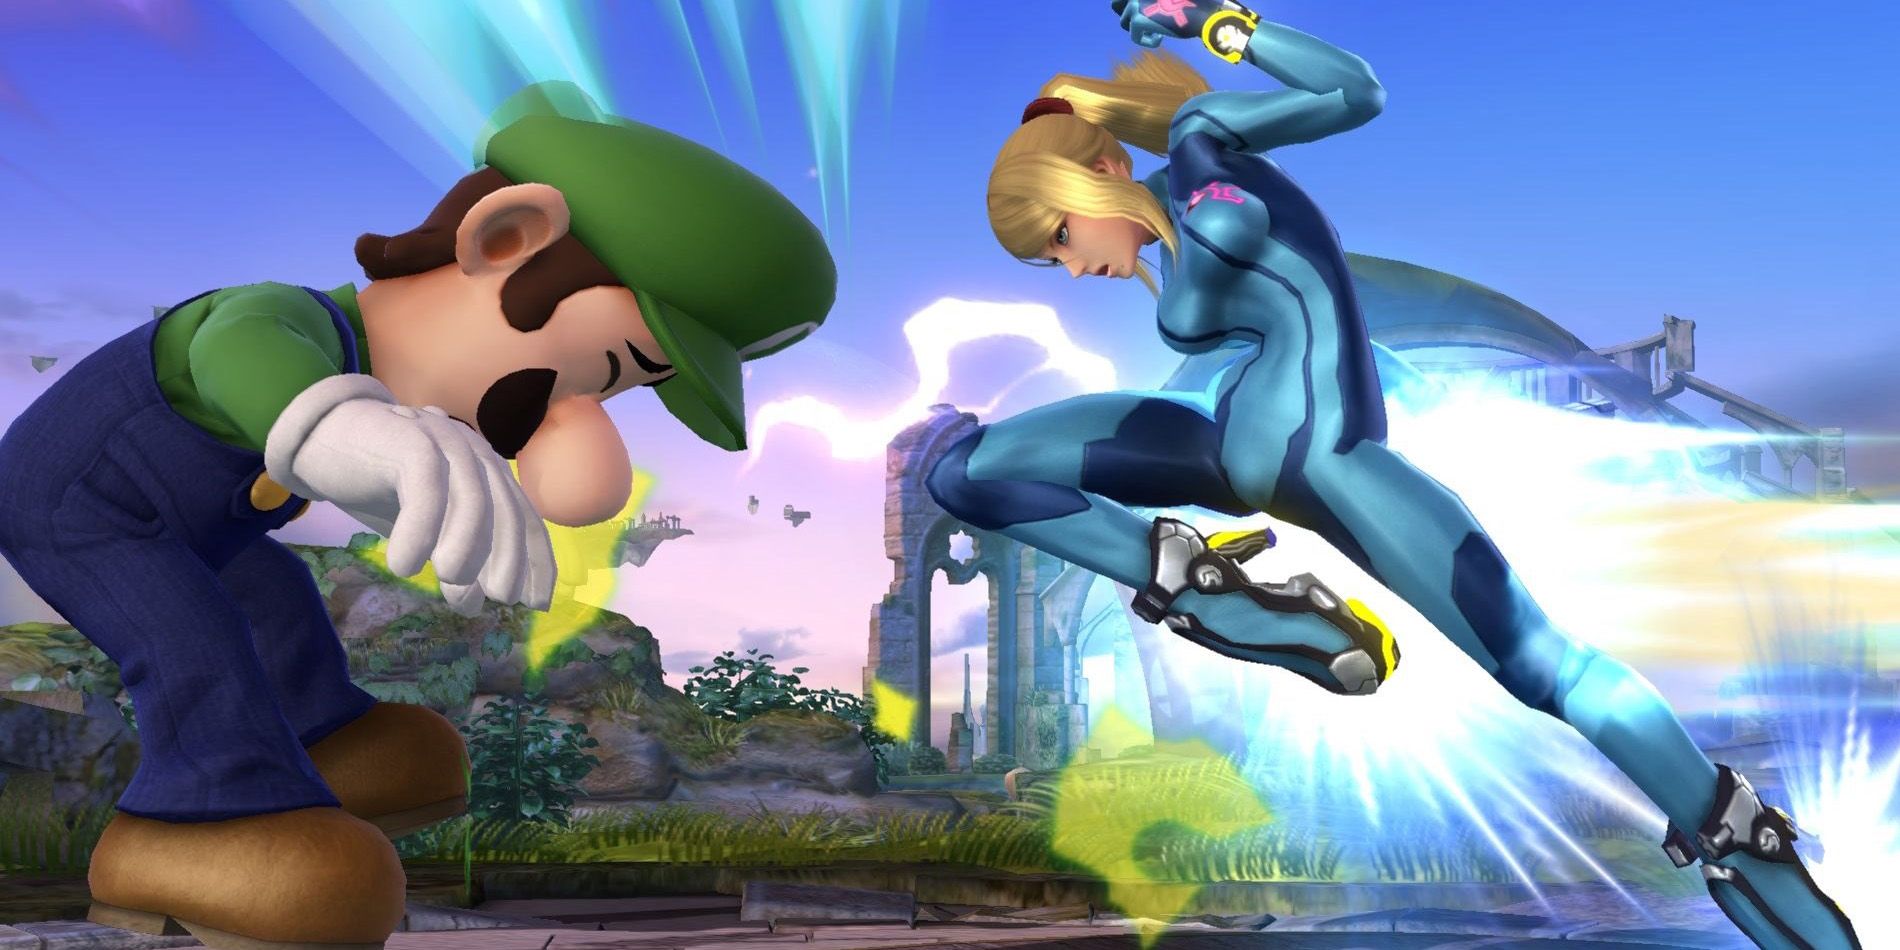 Zero-Suit Samus fighting Luigi in Super Smash Bros. Ultimate